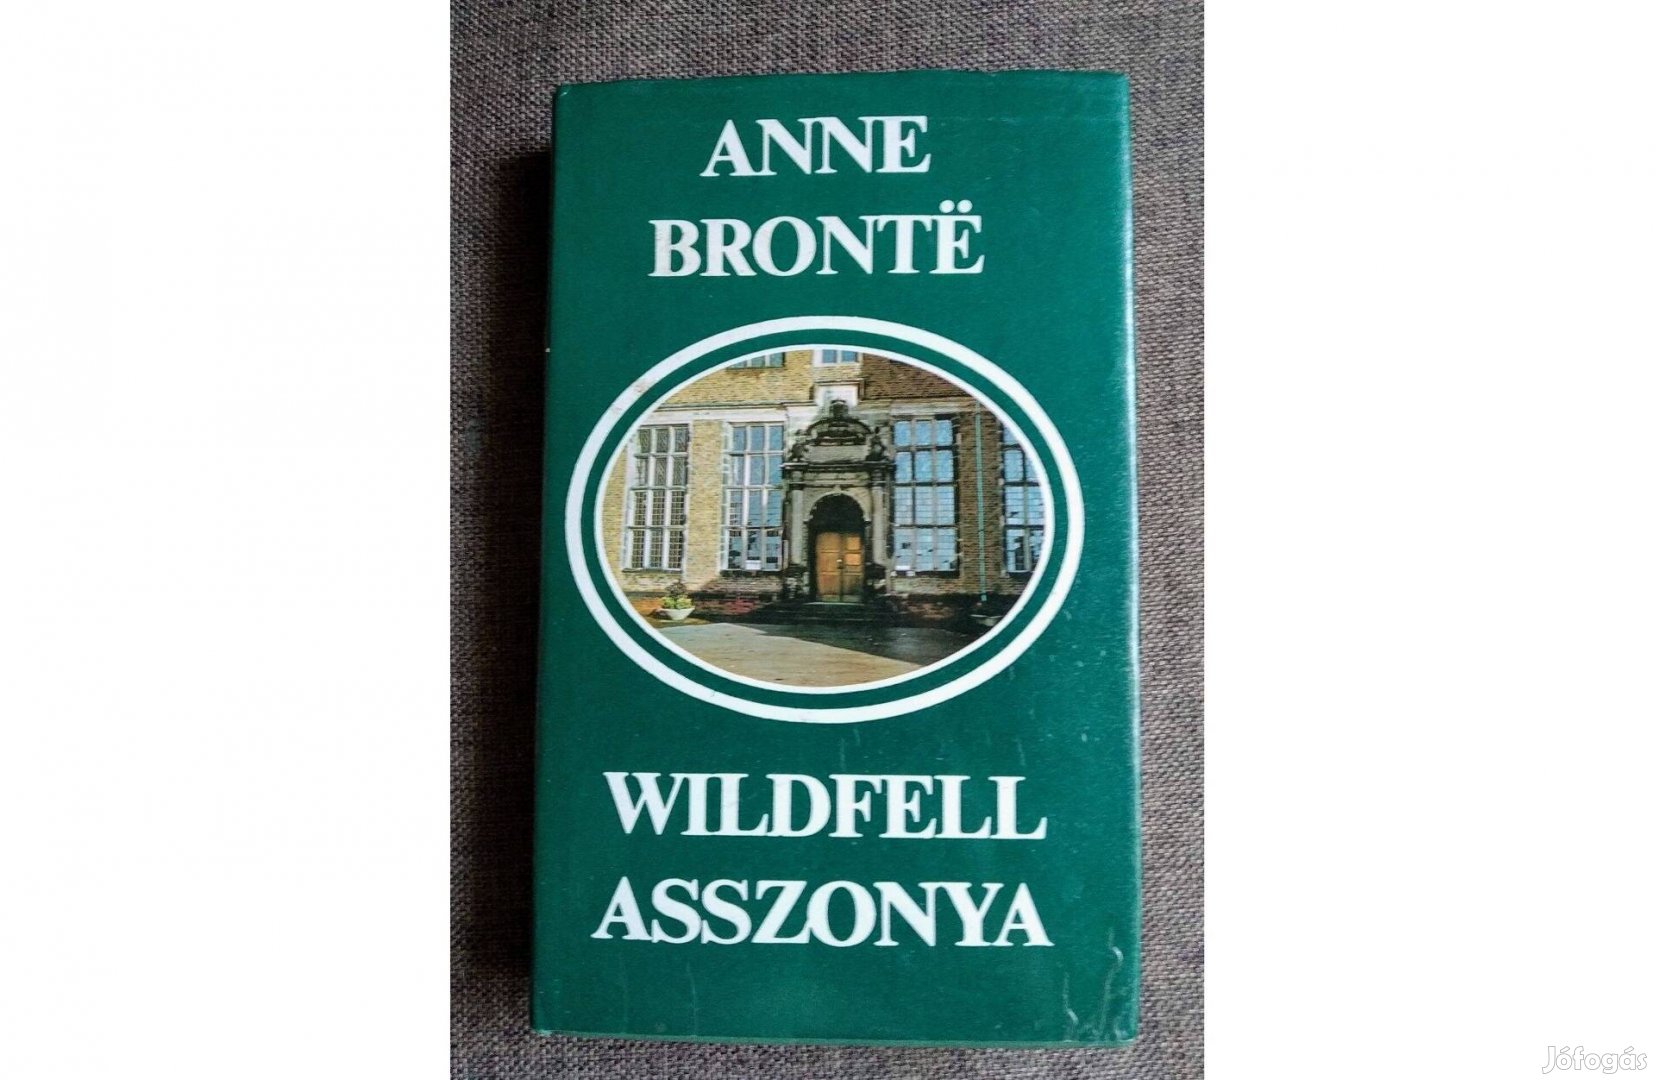 Wildfell Asszonya (Anne Bronte)